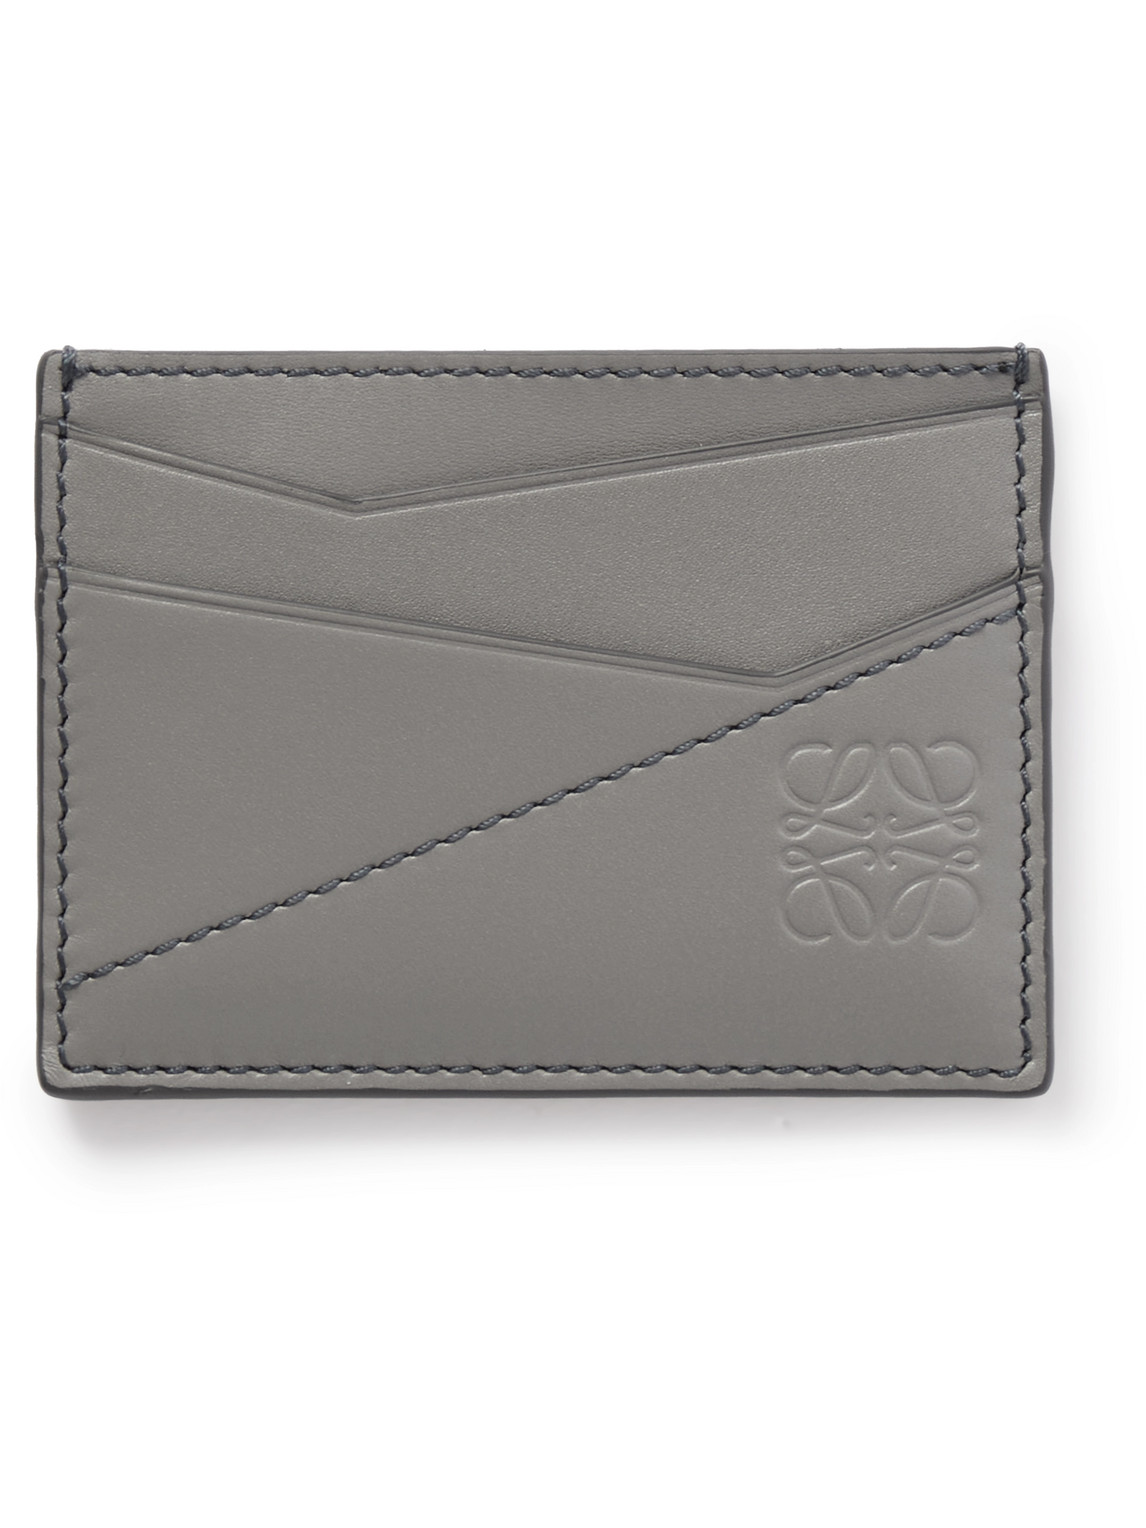 Loewe - Puzzle Logo-Debossed Leather Cardholder - Men - Gray